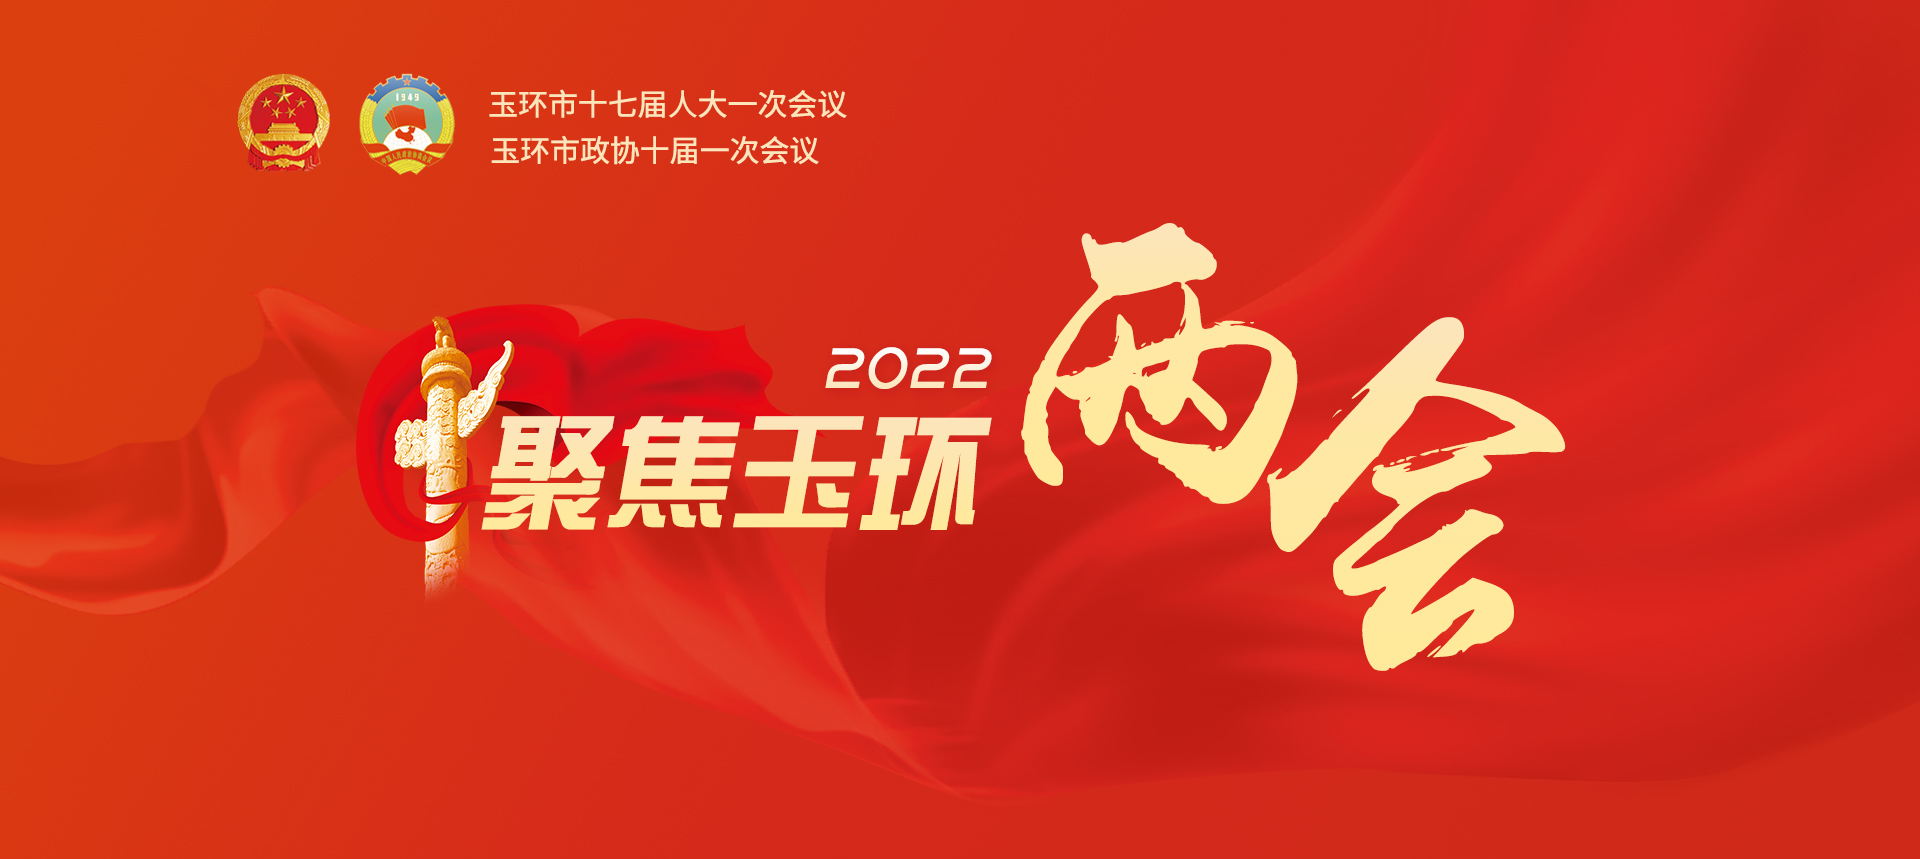 聚焦2022玉环两会logo